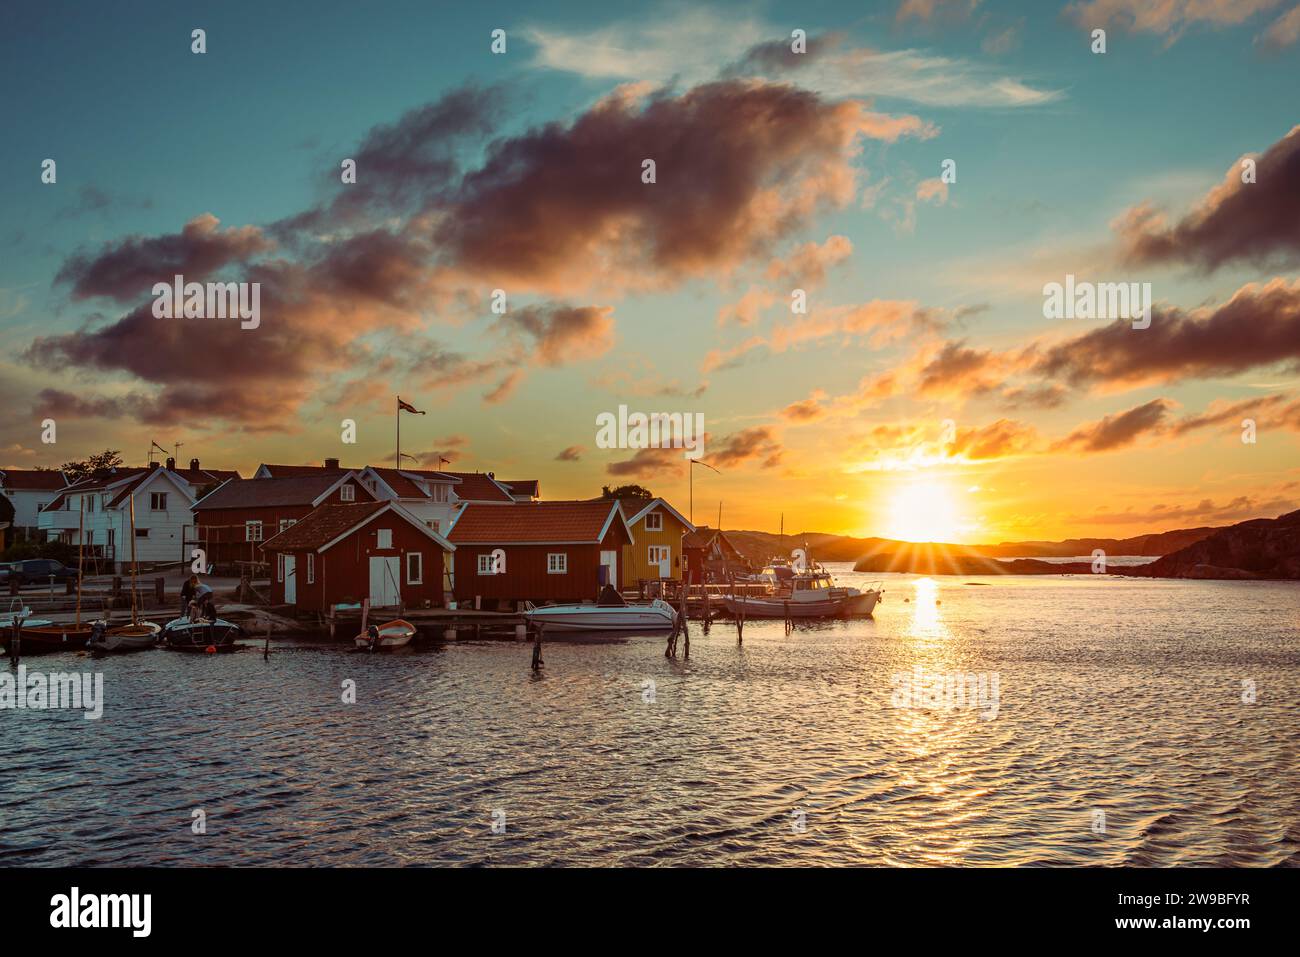 Sonnenuntergang mit dramatischem Himmel über dem Hafen von Björholmen auf der Insel Tjörn in den Schären der Westküste von Schweden Foto Stock